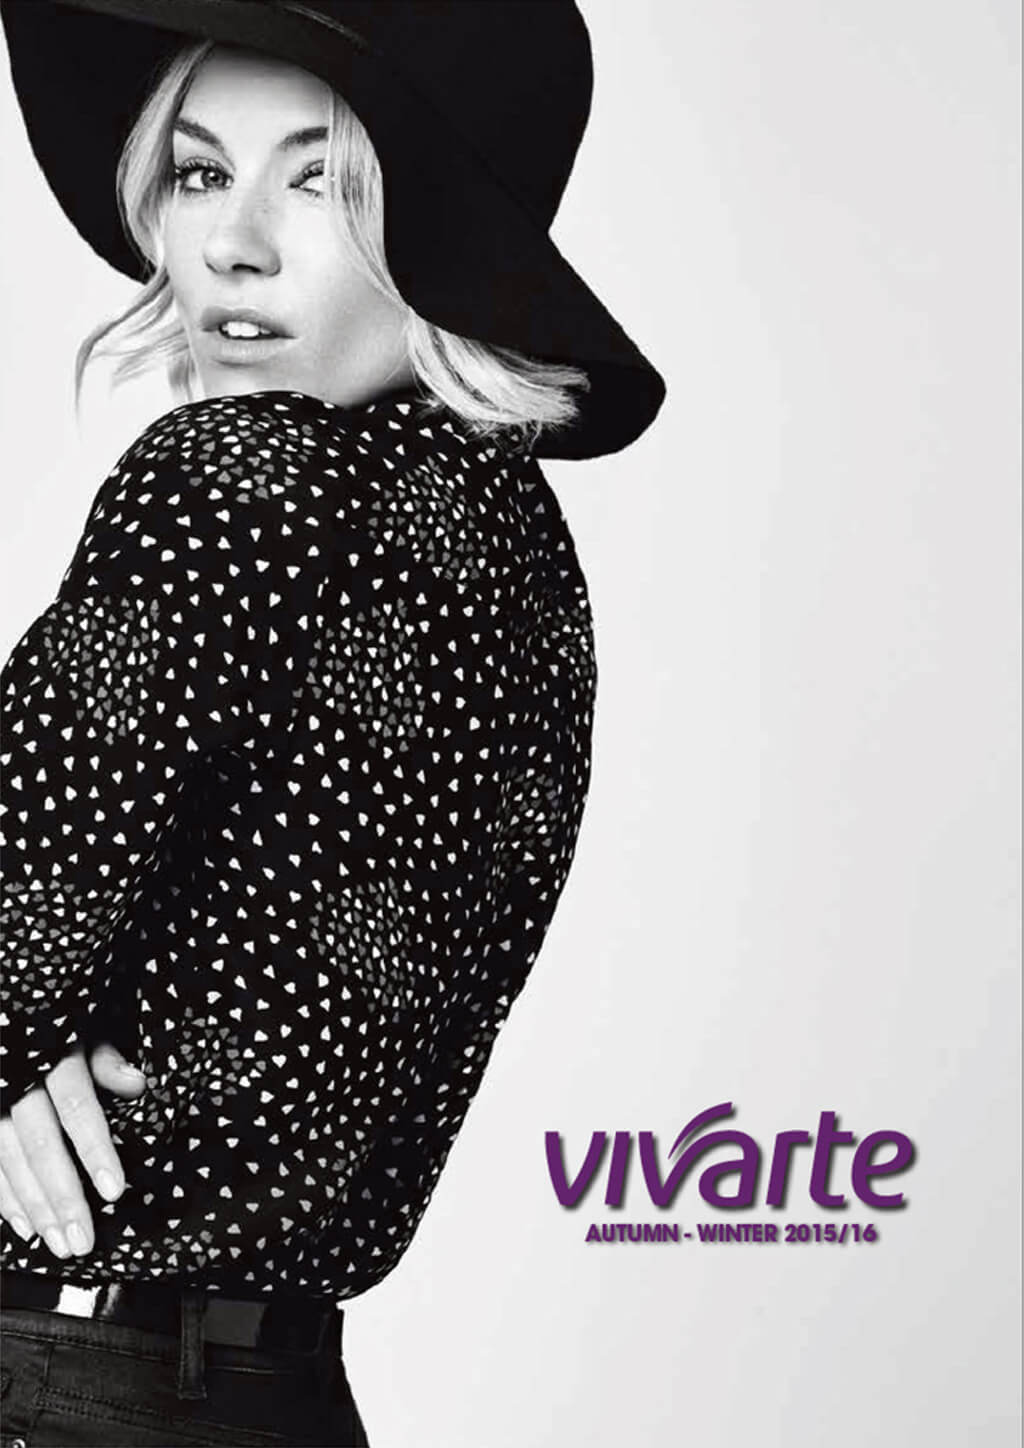 <p>Vivarte : identité visuelle, stratégie de communication</p>
